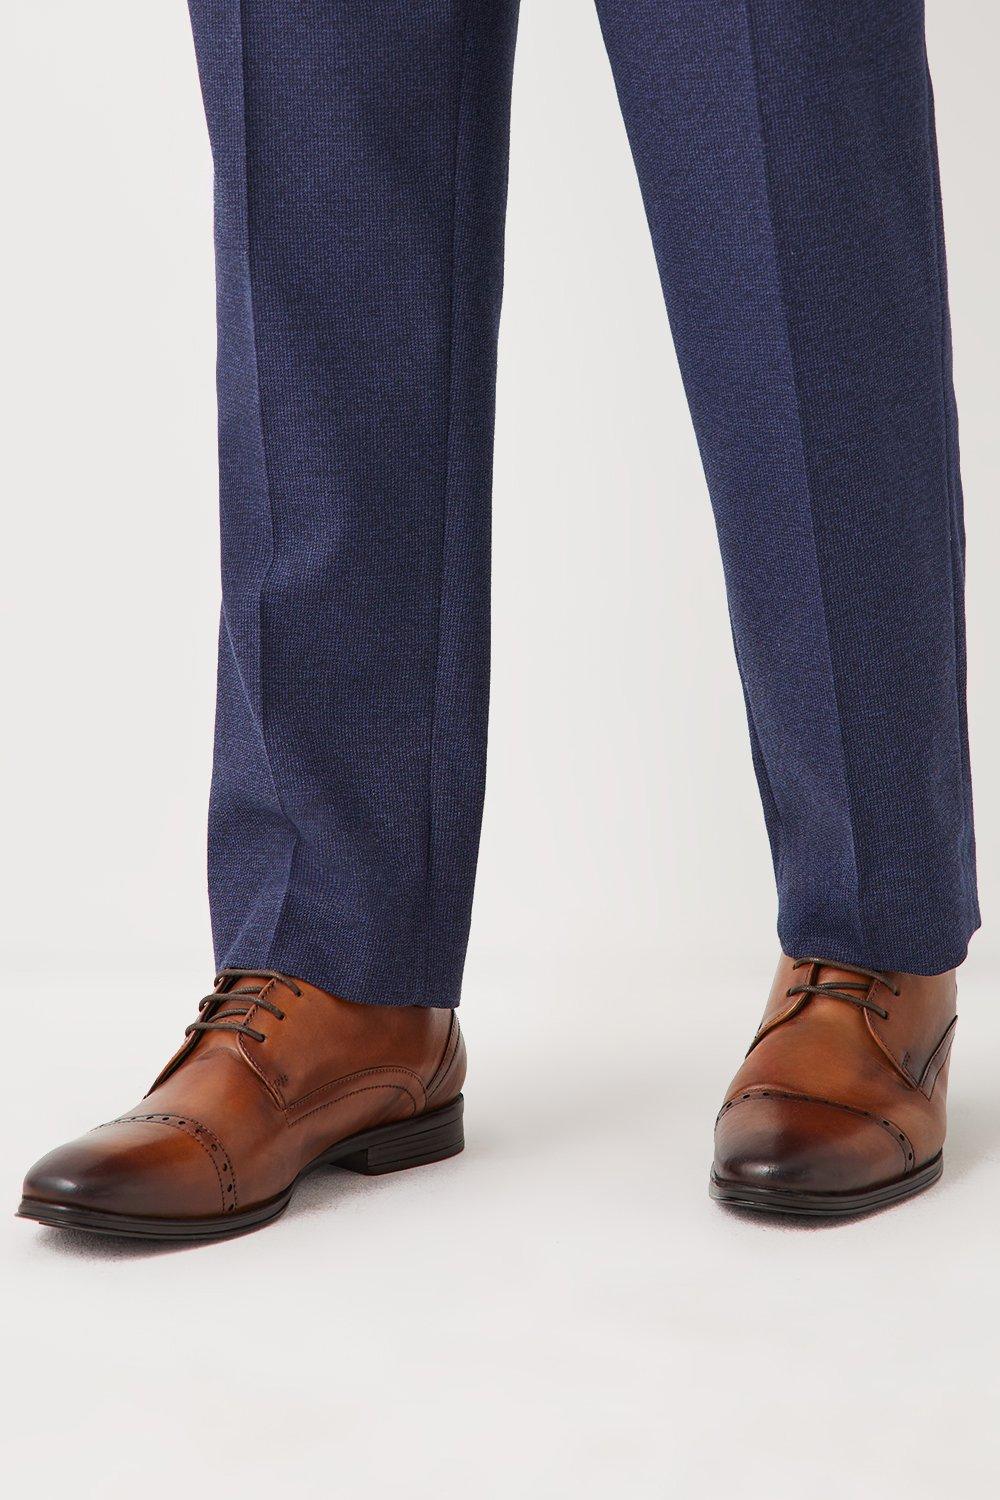 Кожаные броги на шнуровке Archie Comfort с носком Debenhams, коричневый кожаные туфли airsoft comfort на шнуровке debenhams коричневый